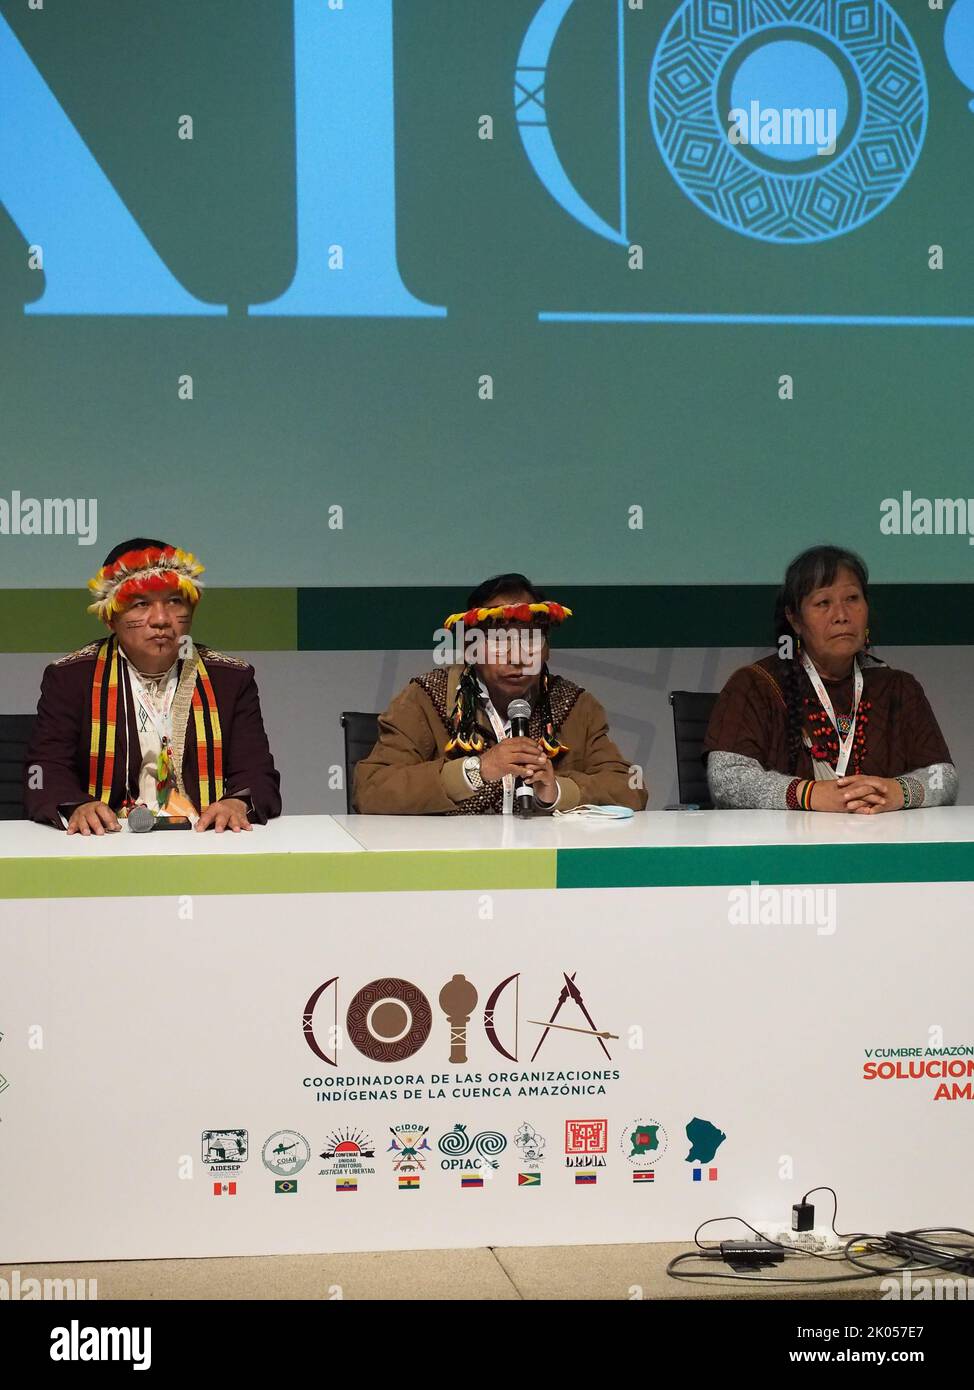 Gregorio Mirabal Kurripako (L) aus Venezuela, Mitglied des Rates der indigenen FSC-Stiftung und Generalkoordinator, Evaristo Nugkuag (C), indigener Führer und peruanischer Ökologe, der zur ethnischen Gruppe der Aguaruna gehört, Und andere indigene Führer, die am XI. Kongress der Koordinatorin indigener Organisationen des Amazonasbeckens (COICA) in Lima teilnehmen. COICA ist eine Organisation, die 511 indigene Völker in den 9 Amazonas-Ländern vertritt. Kredit: Fotoholica Presseagentur/Alamy Live Nachrichten Stockfoto